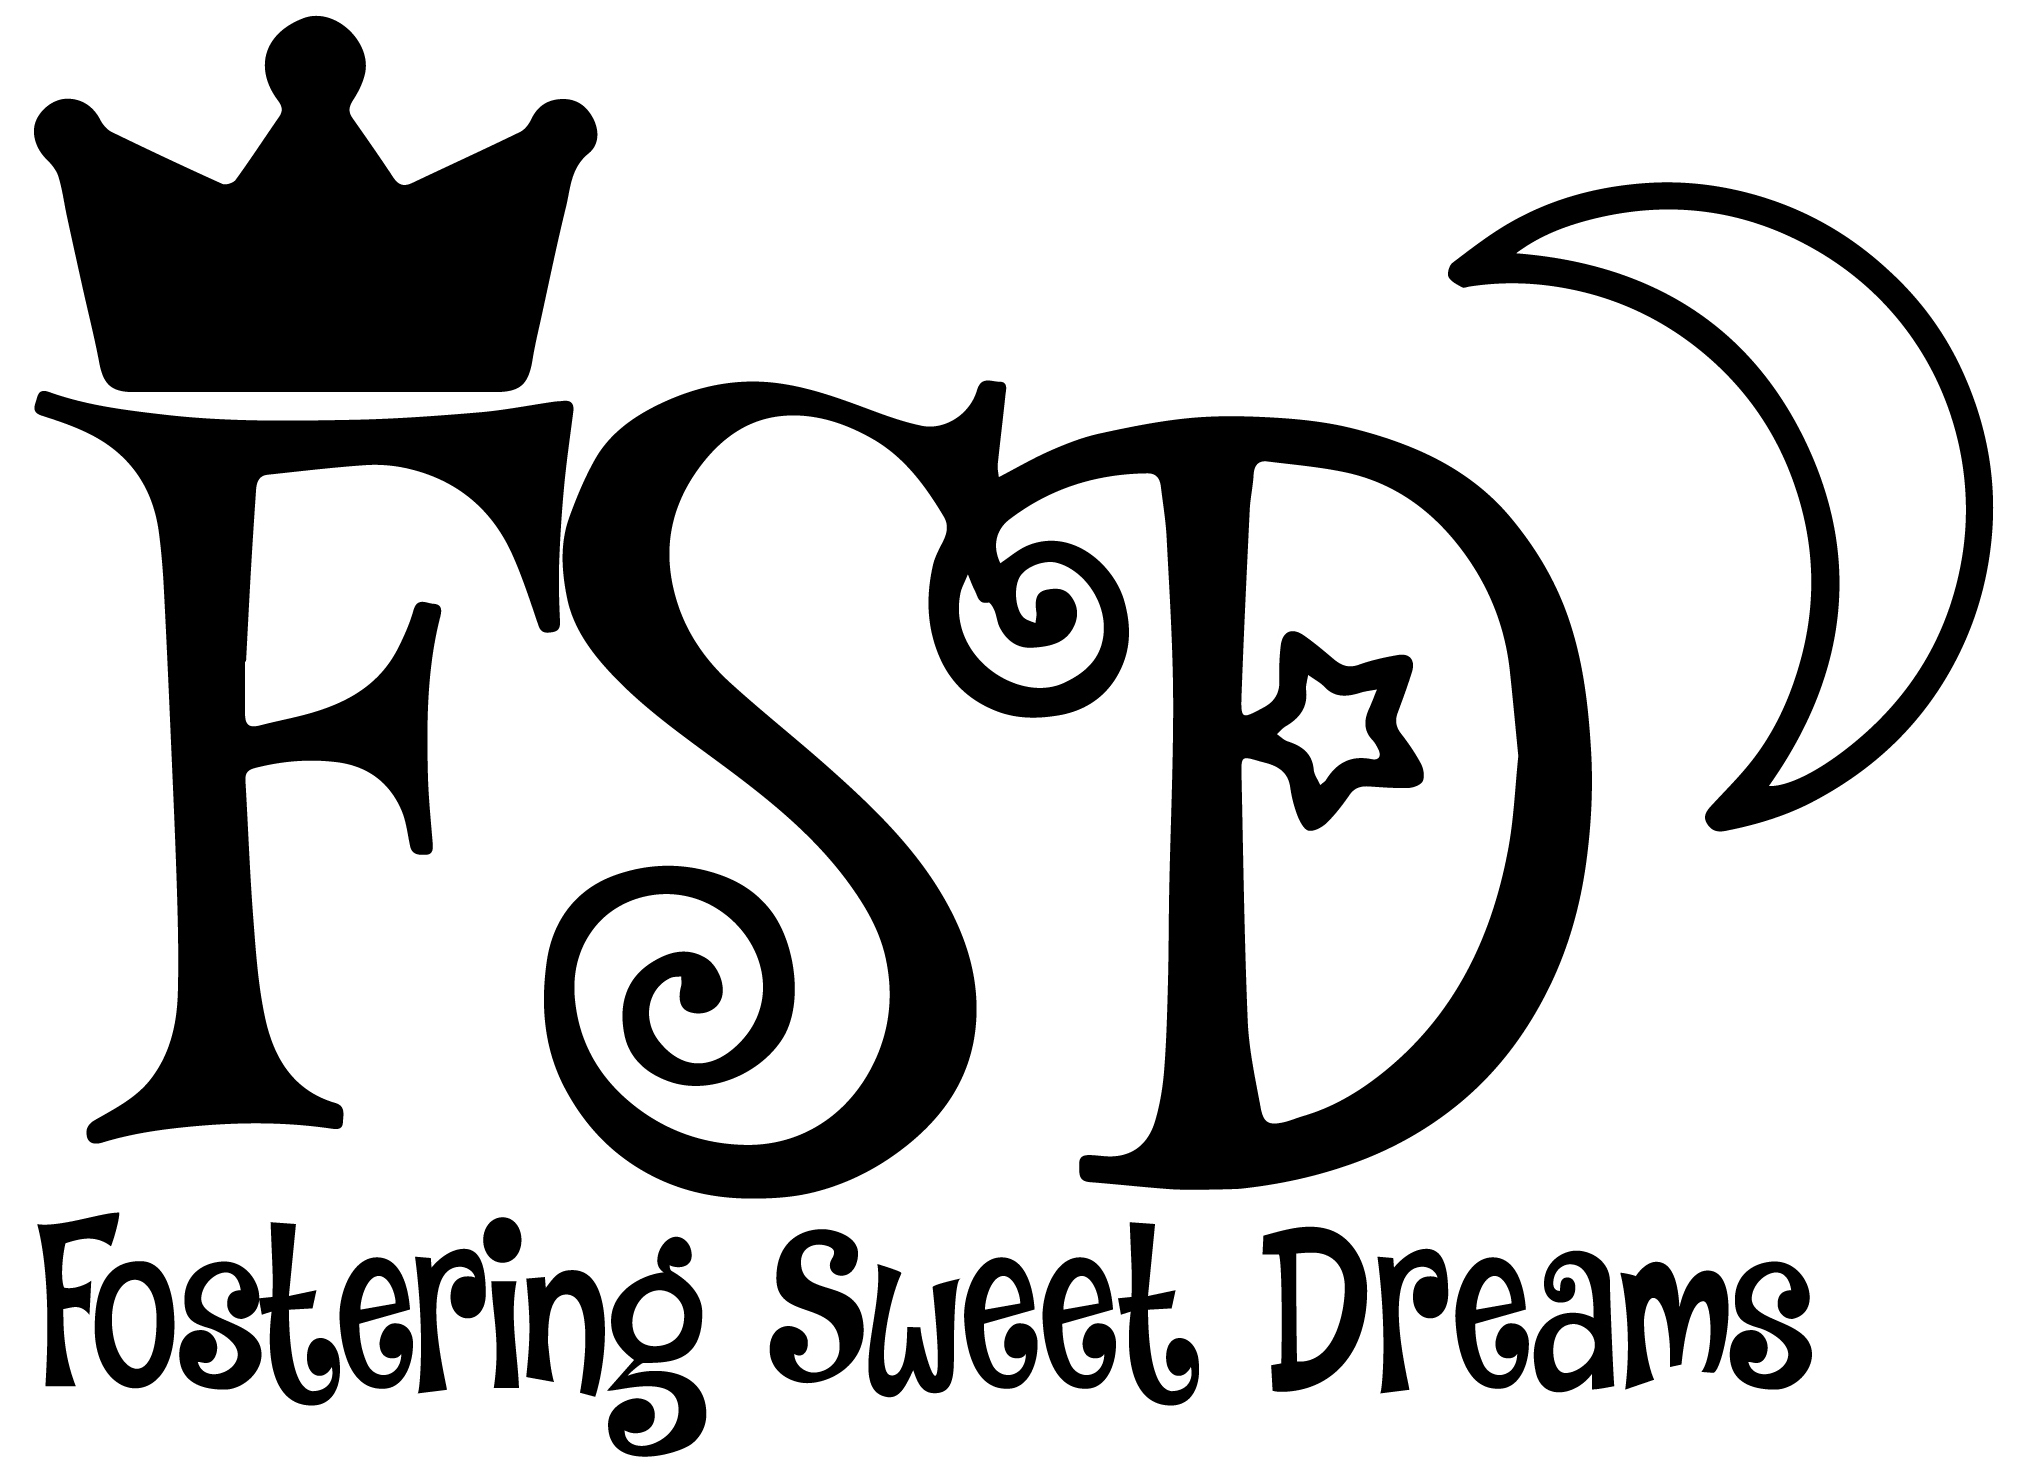 Fostering Sweet Dreams logo